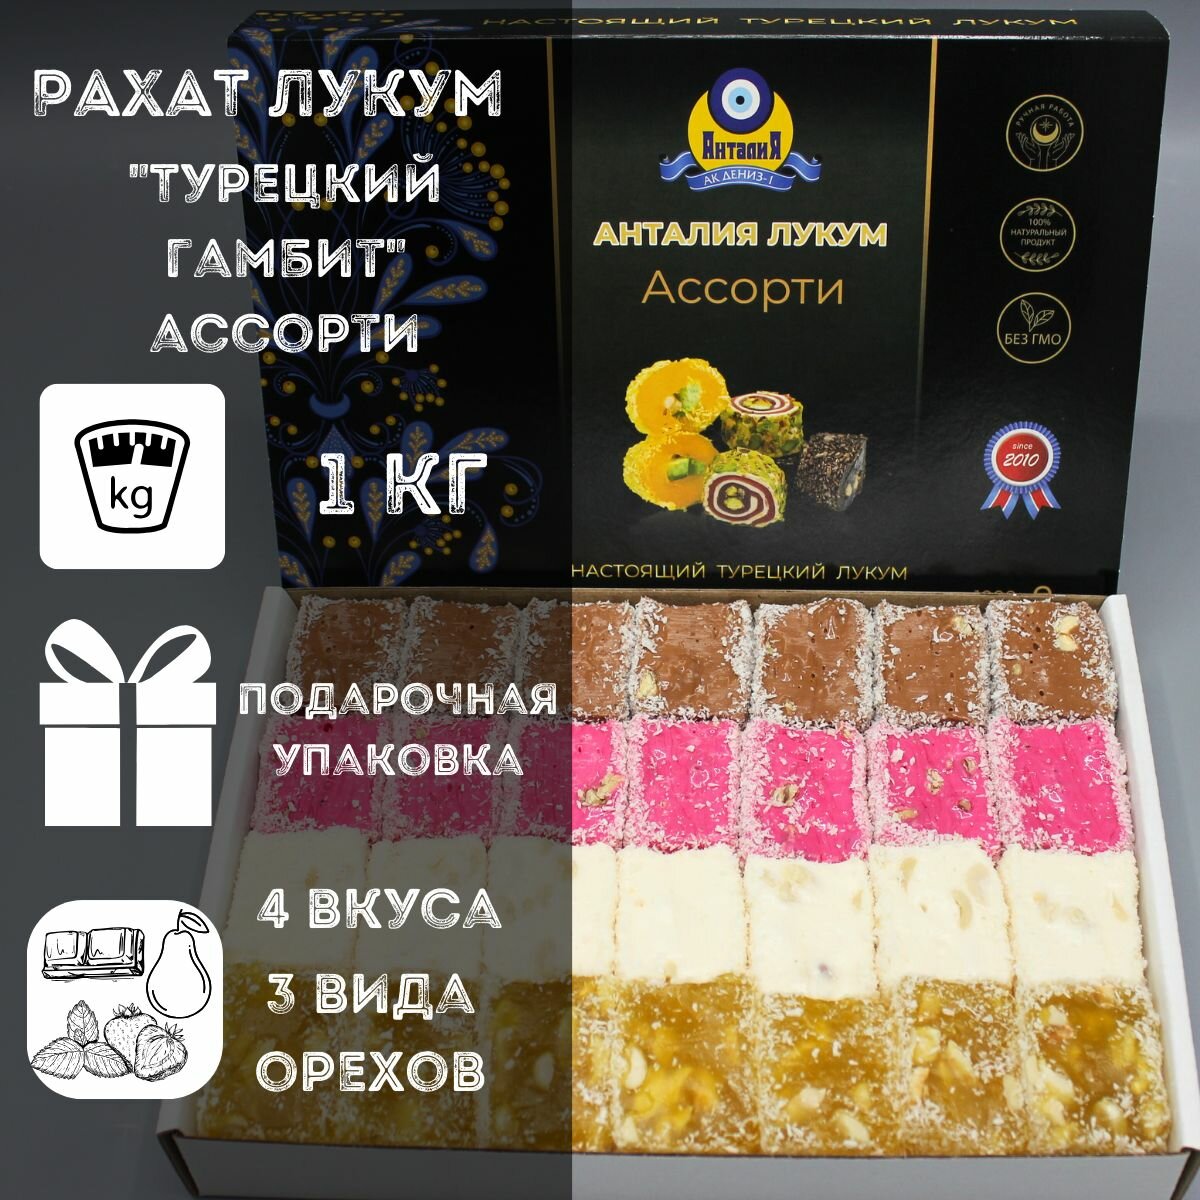 Рахат лукум 1 кг "Турецкий гамбит" с грецким орехом, фундуком и арахисом 4 вкуса в подарочной упаковке: шоколадный, лайм, дыня, гранат - сладкий подарок на день рождения, приятный подарок на праздник, 8 марта